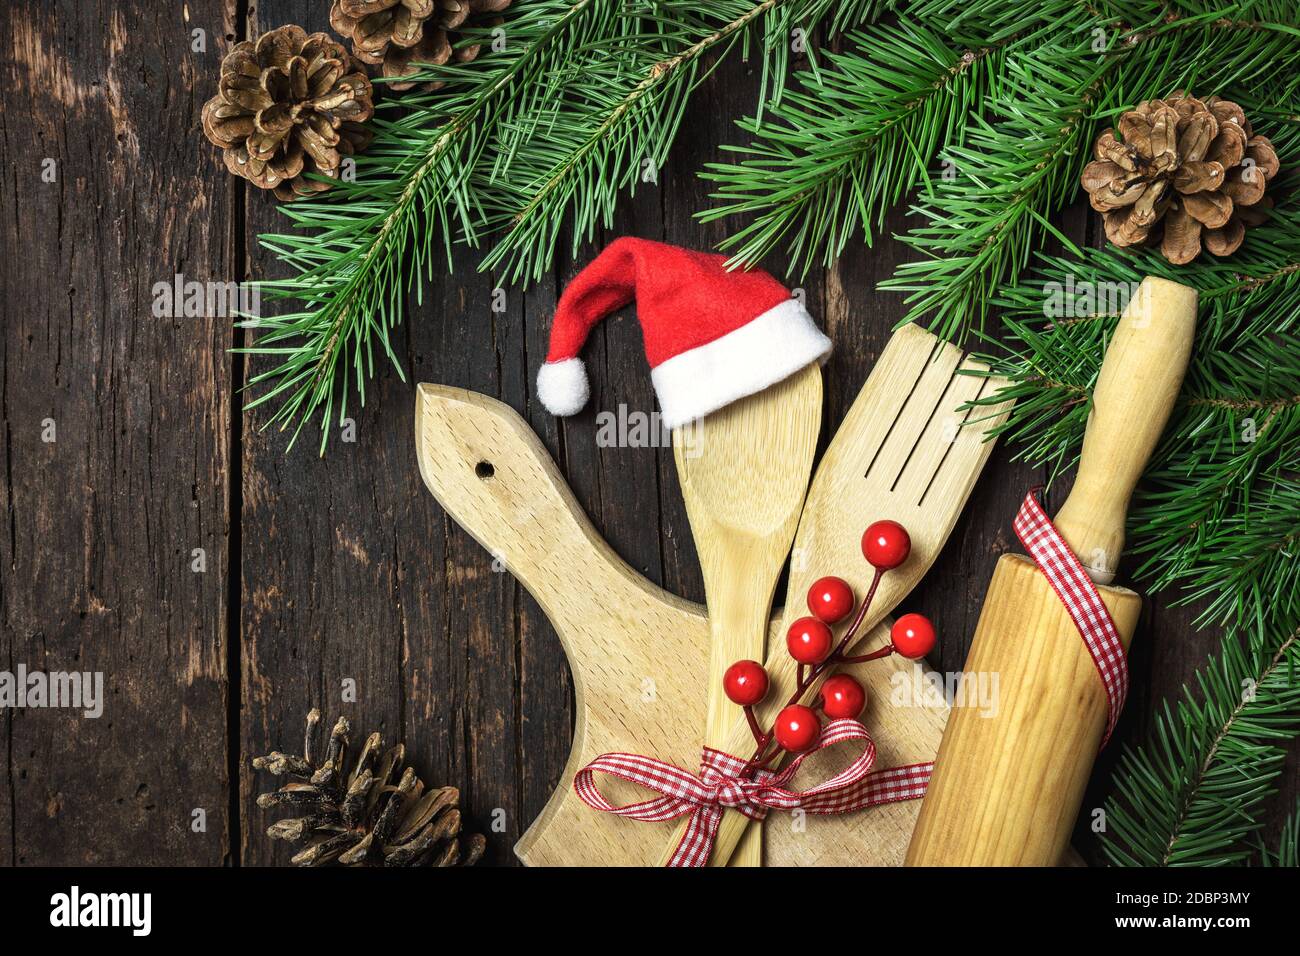 Ustensiles de cuisine en bois avec chapeau de père Noël et cônes de pin sur fond de bois rustique foncé. Vue de dessus avec espace de copie pour votre texte. La cuisine de Noël Banque D'Images